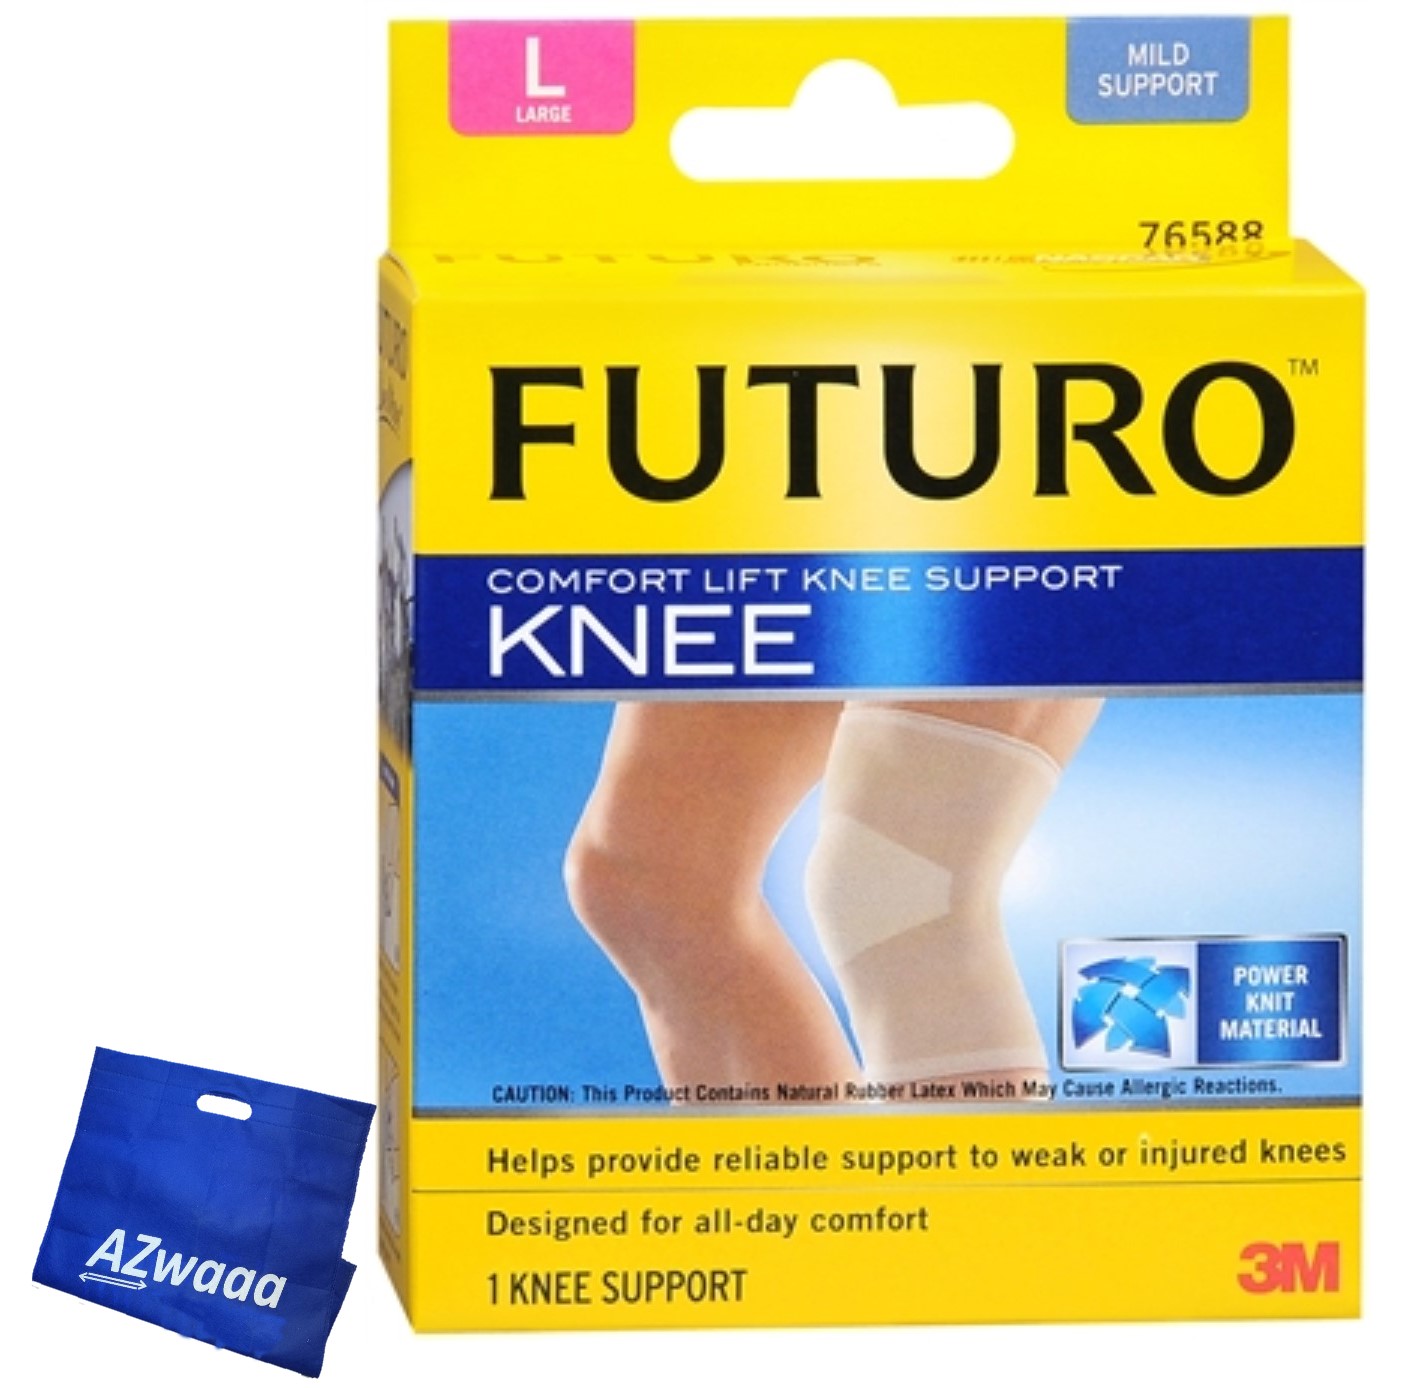 FUTURO™ | Comfort Knee Support  EN 76588 - L - داعم للركبة فوتورو